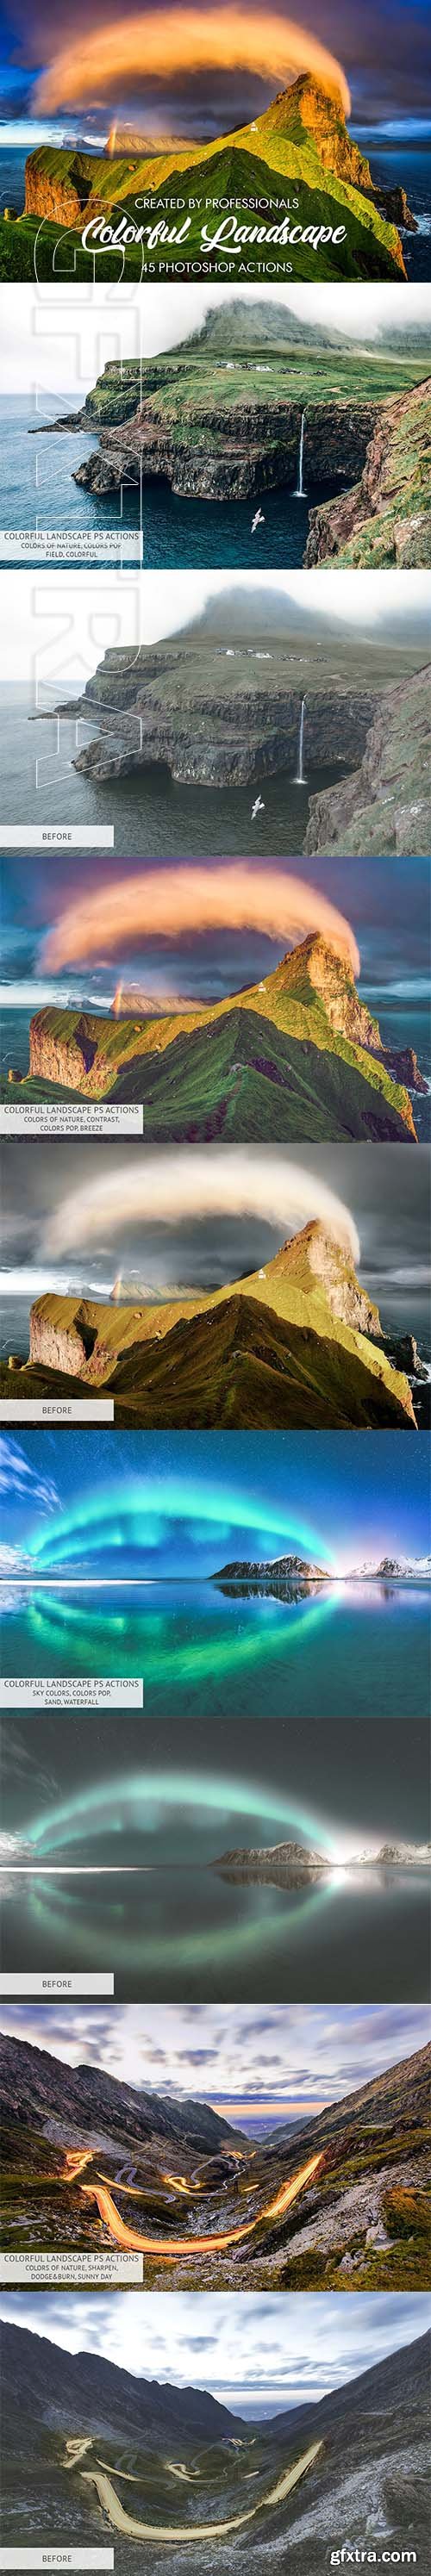 CreativeMarket - Colorful Landscape Photoshop Actions 3601683